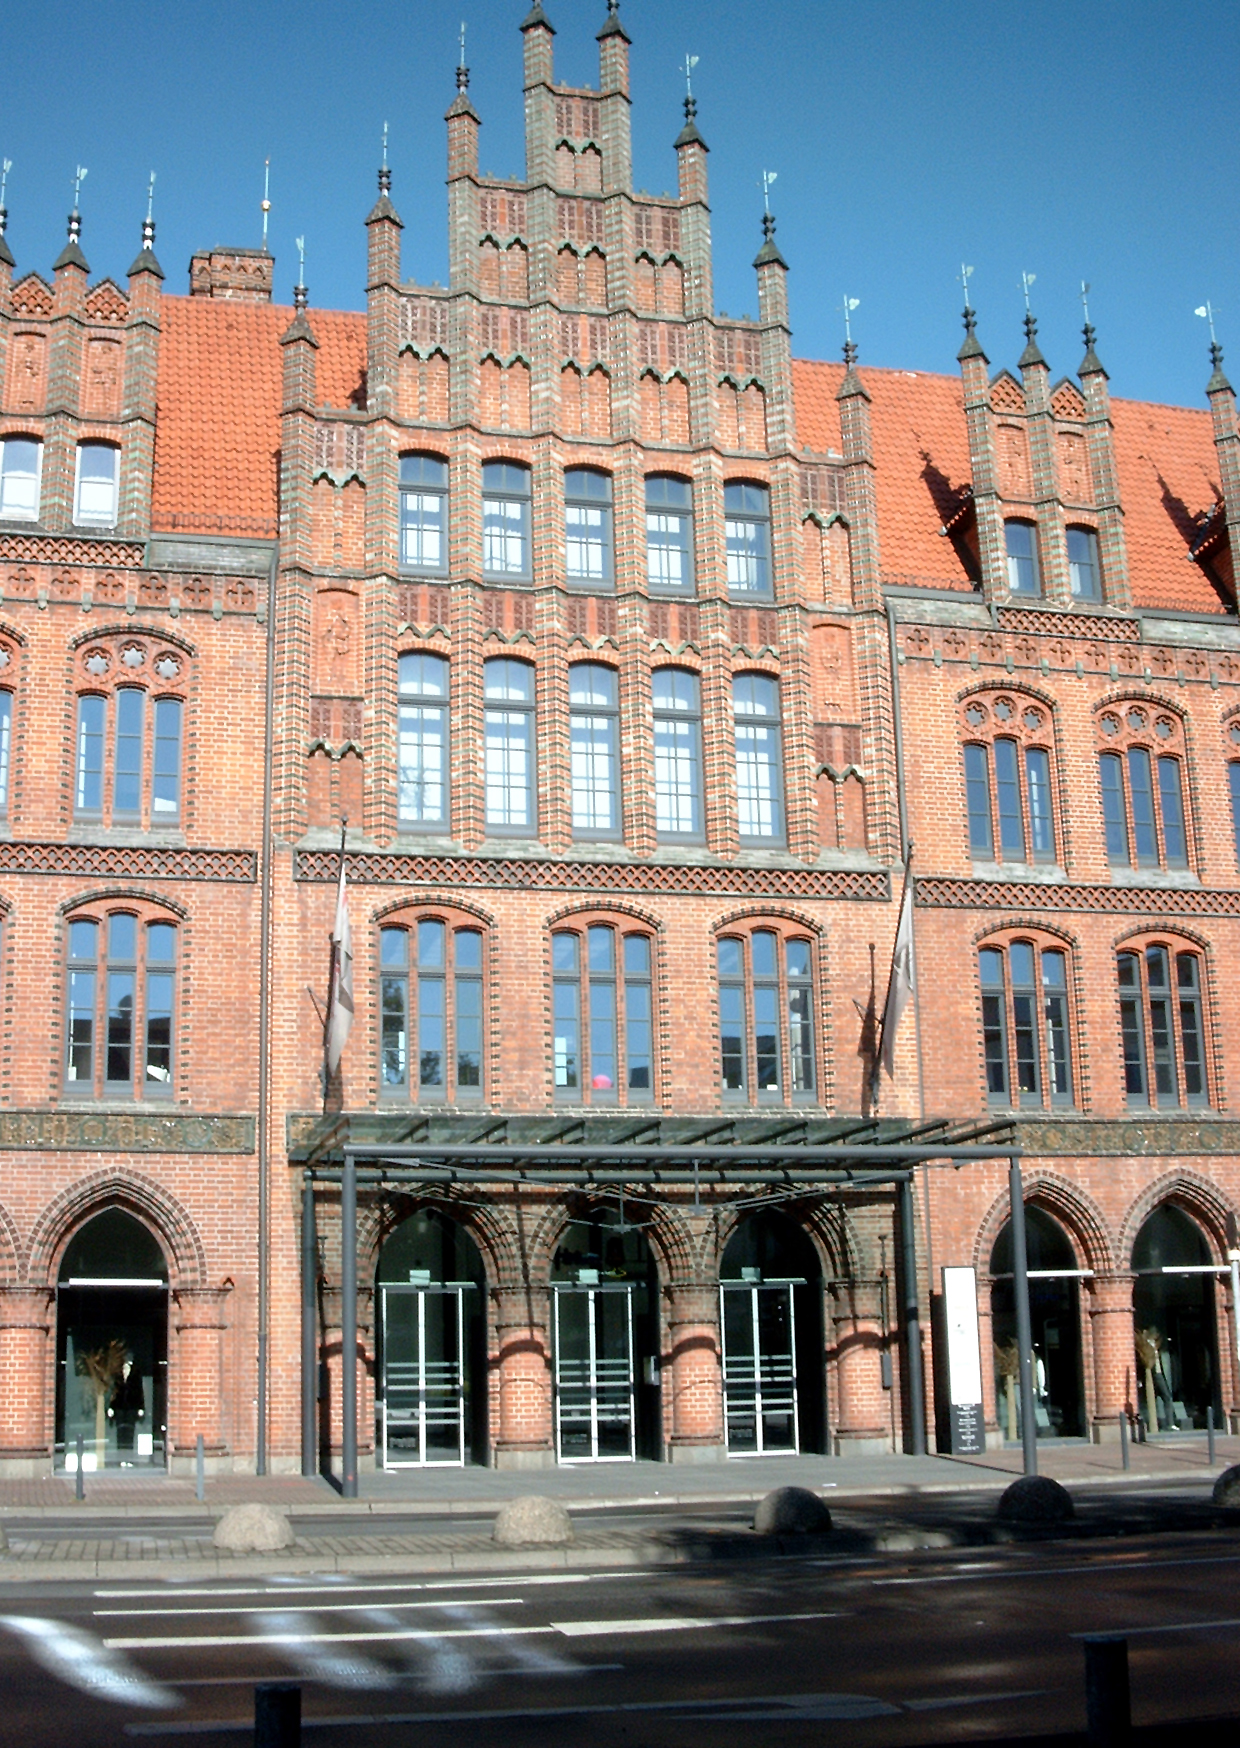 Vorderseite des alten Rathauses von Hannover.